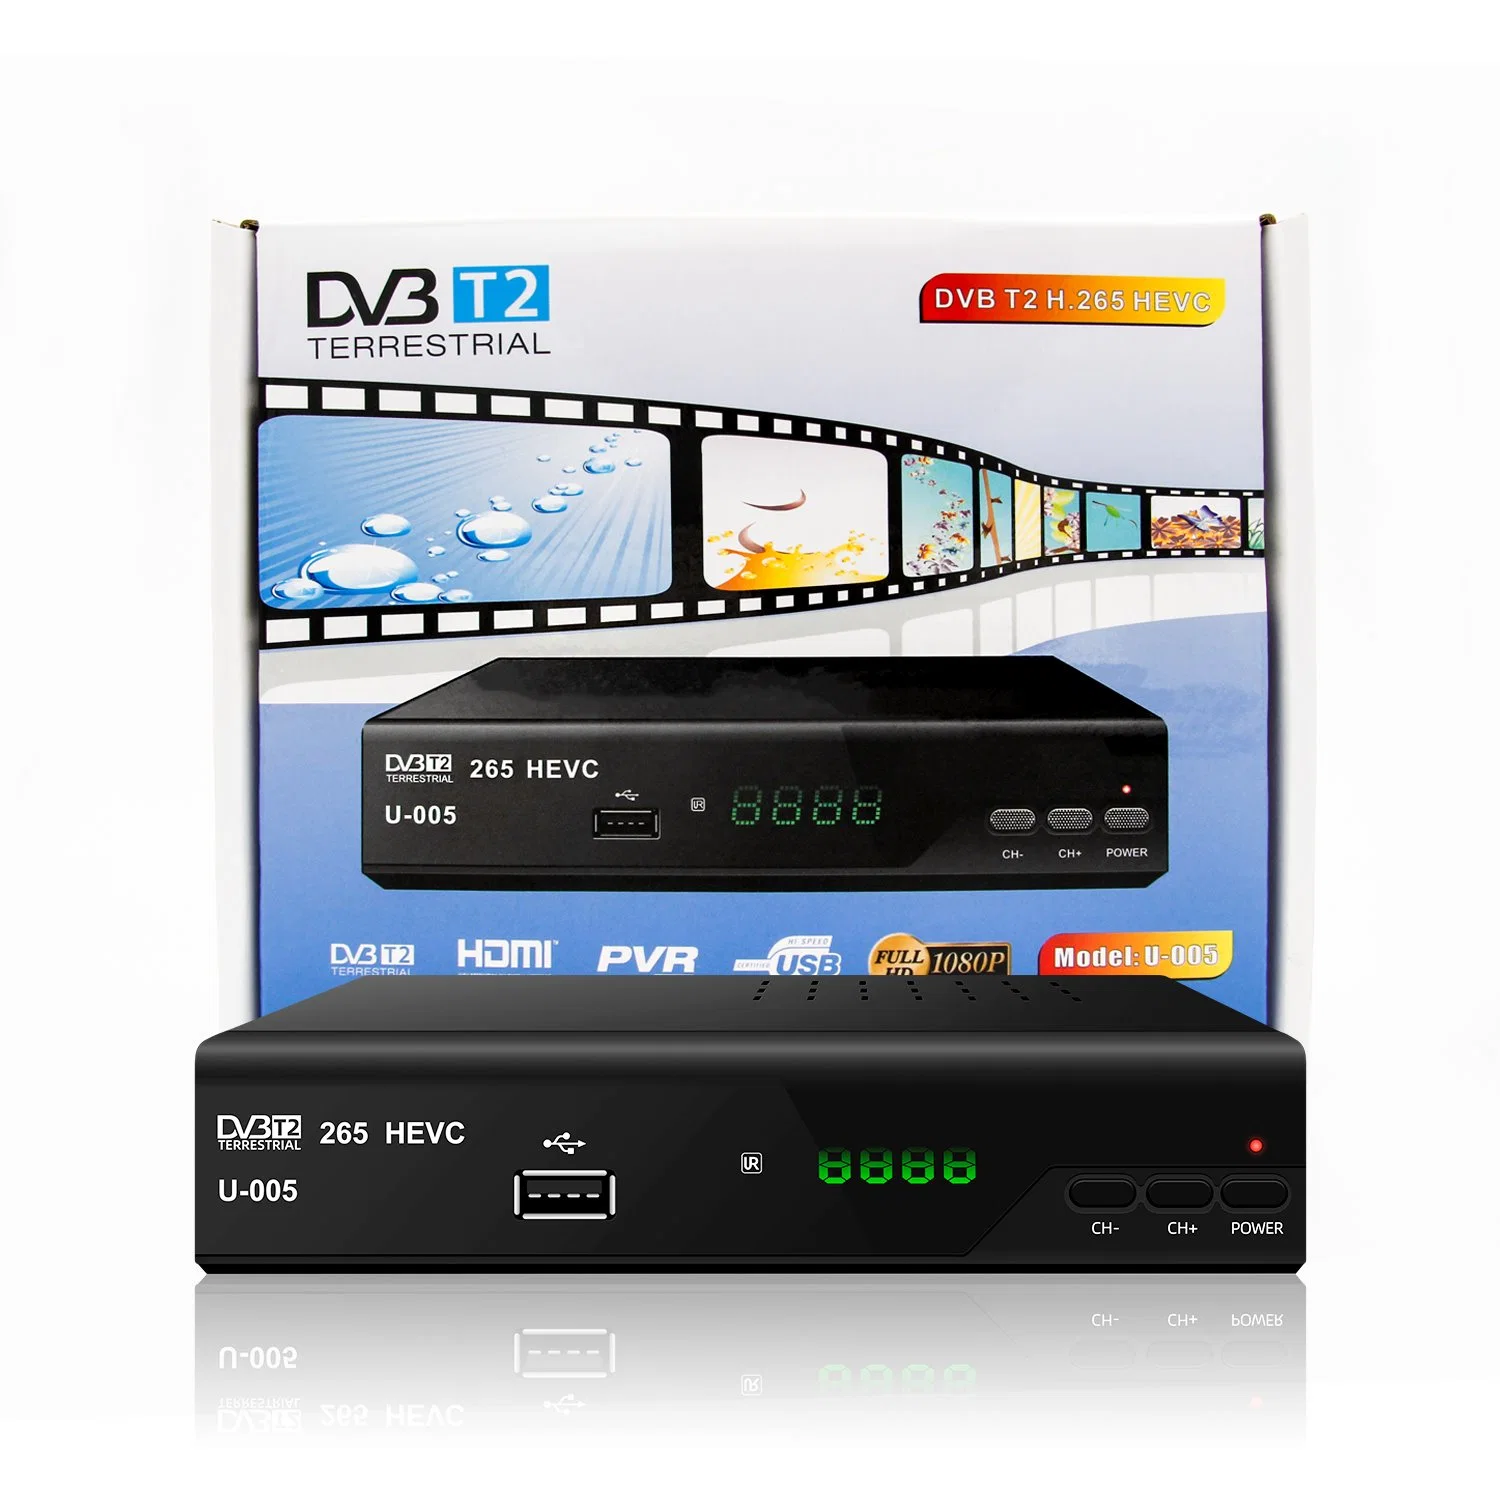 Boa qualidade H. 265 Hevc DVB-T2 Receptor de TV Digital